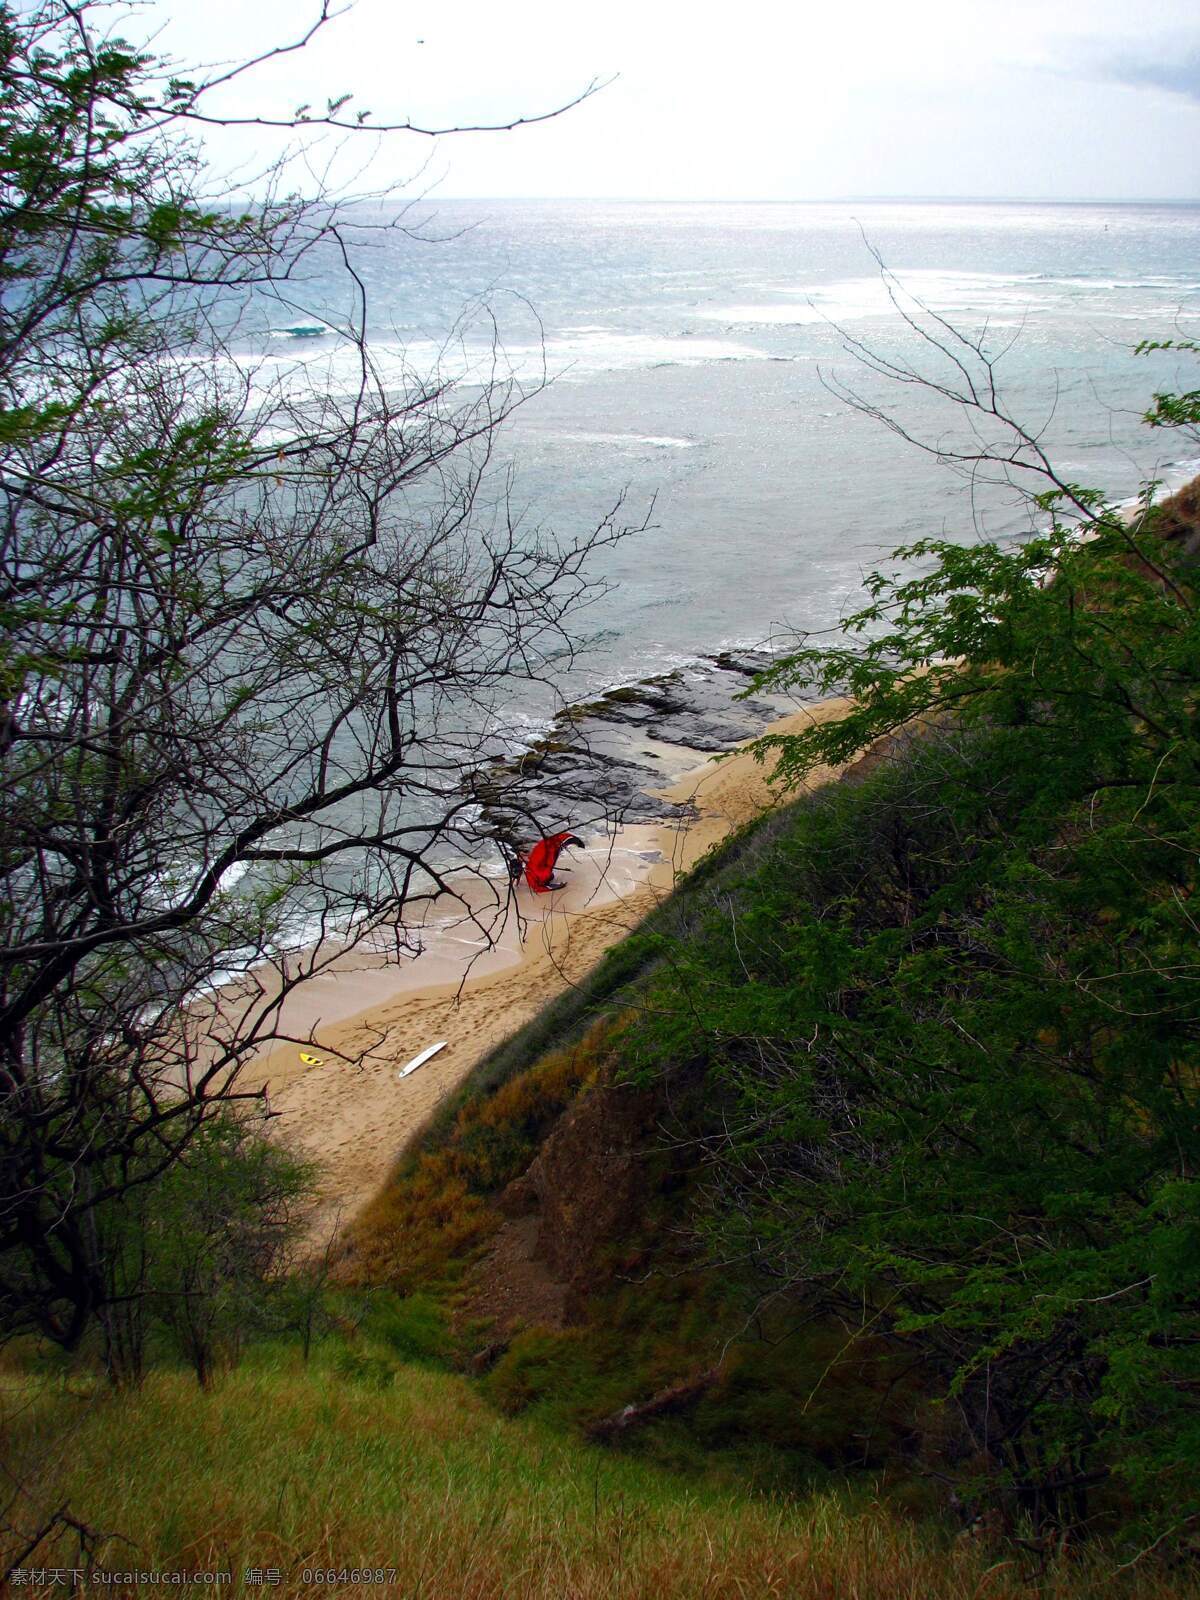 夏威夷 海滩 大海 国外旅游 黄色 旅游摄影 沙滩 树丛 小船 夏威夷海滩 游人 悬崖 旅游风光 psd源文件